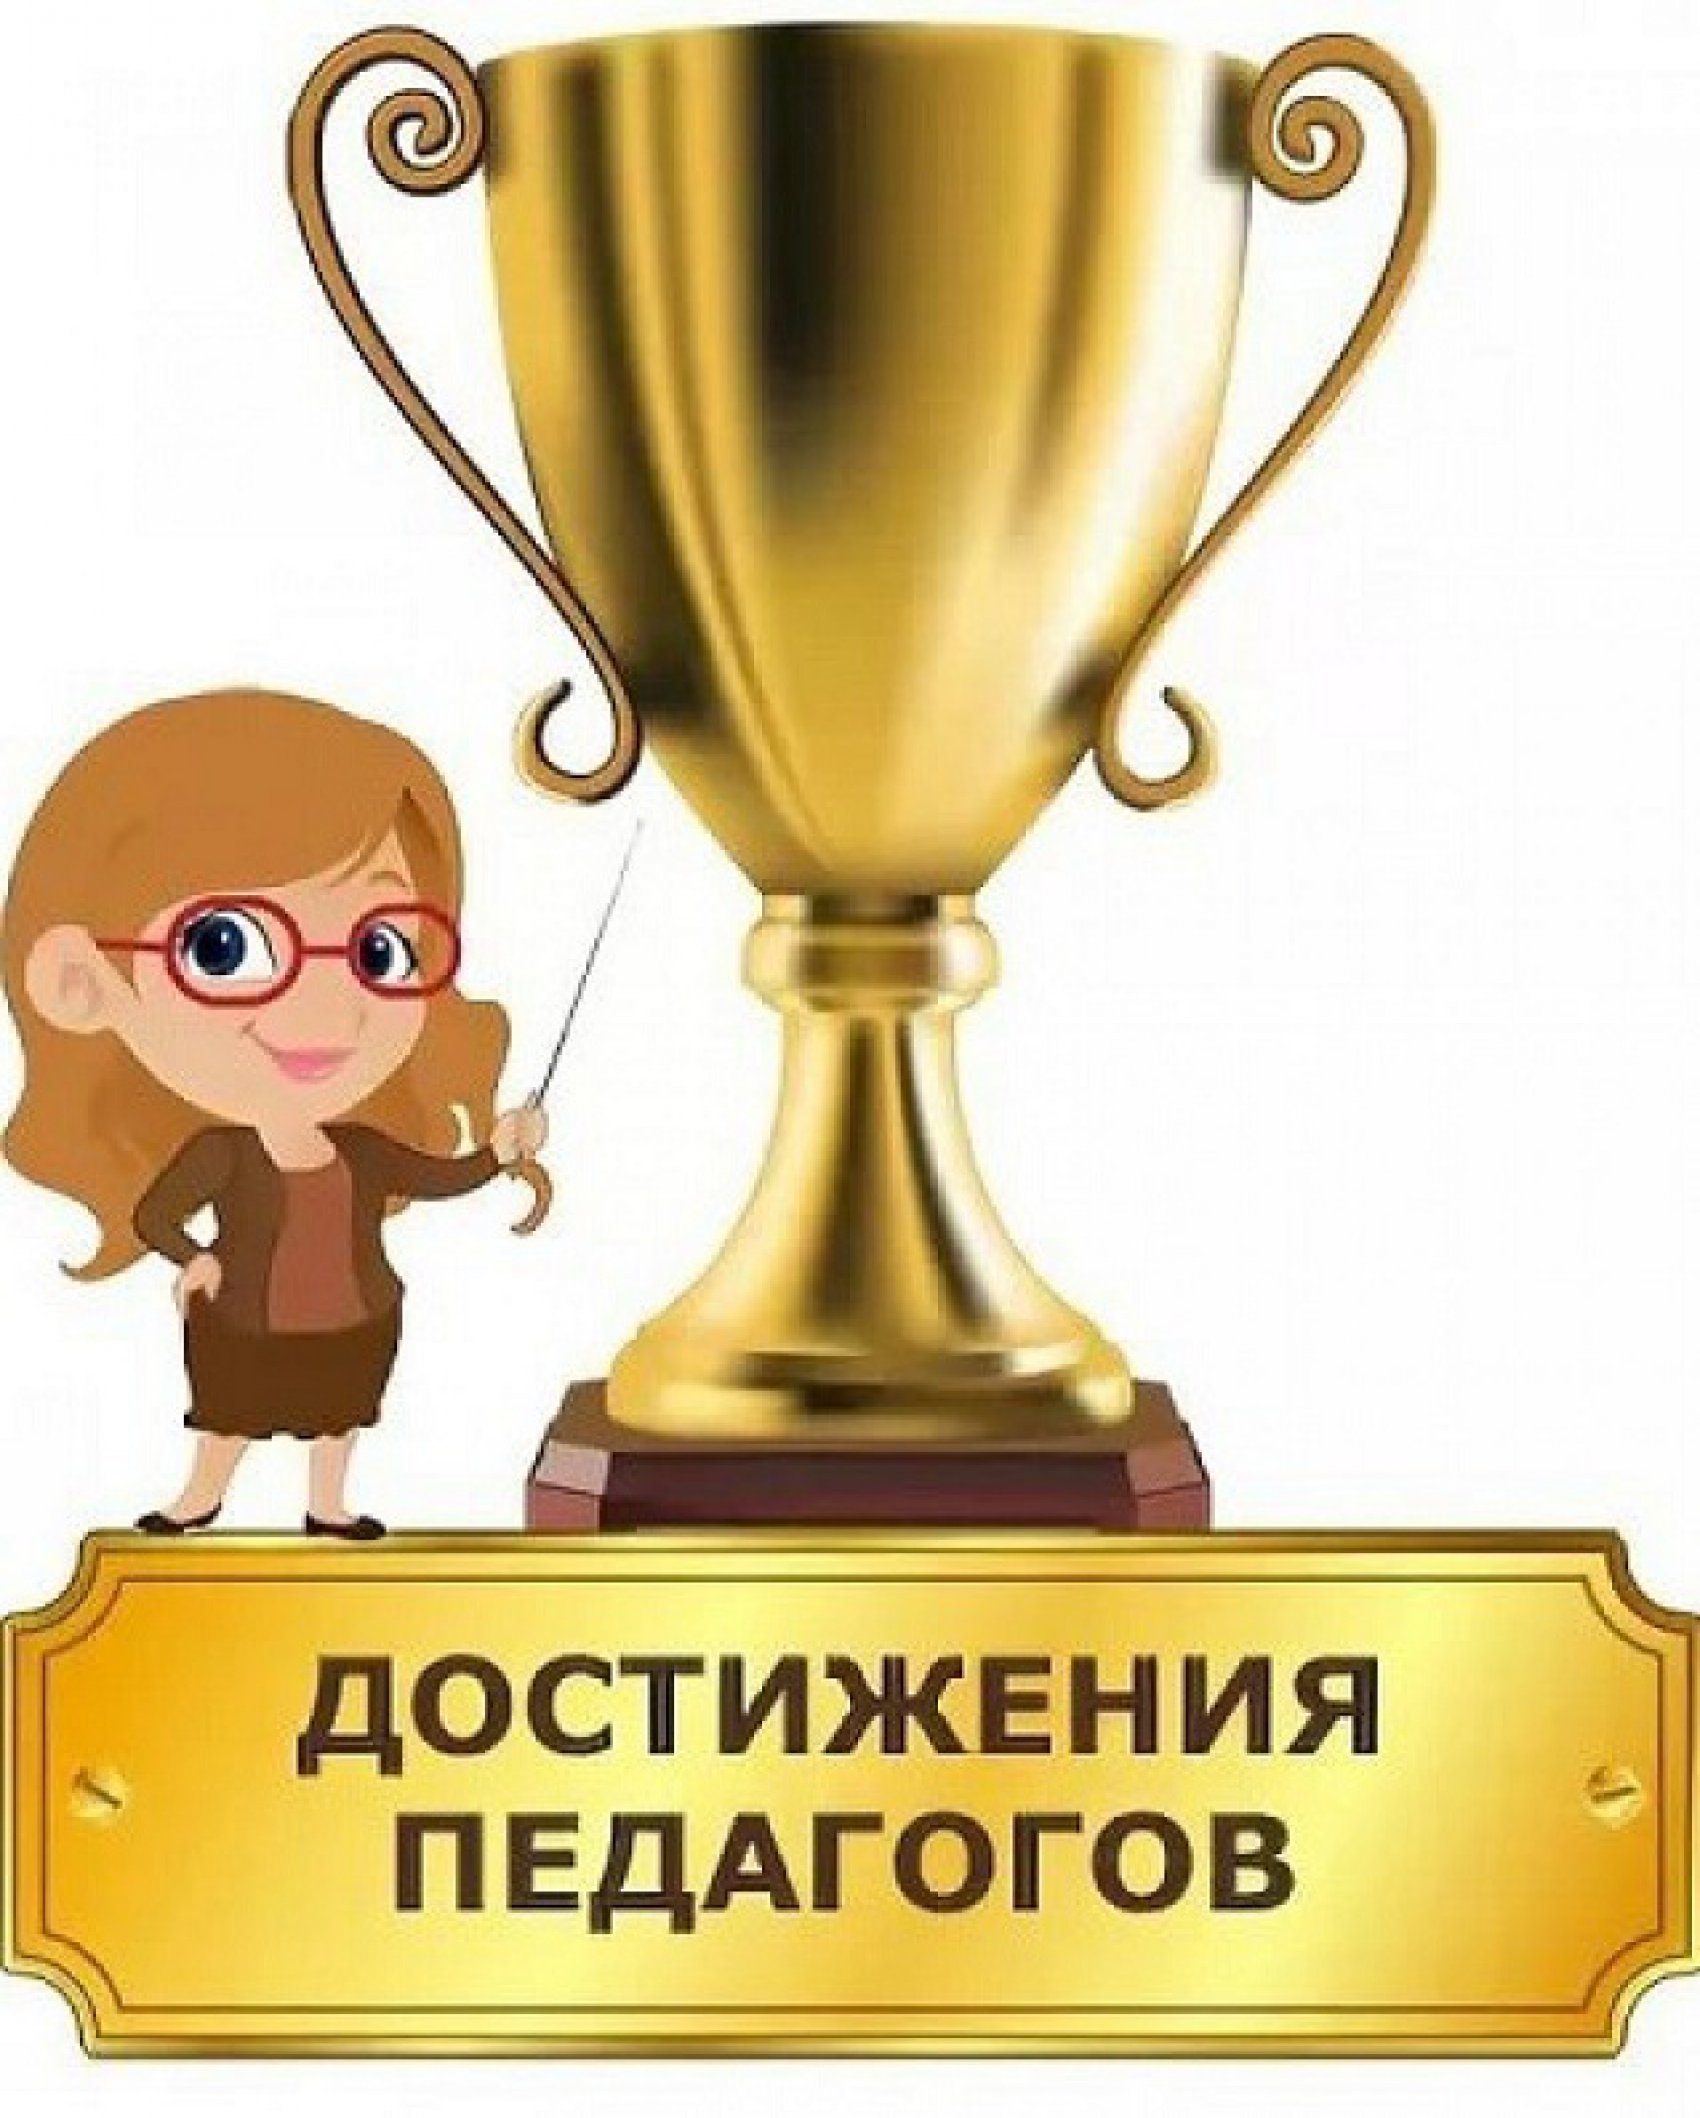 Достижения педагогов-2016г